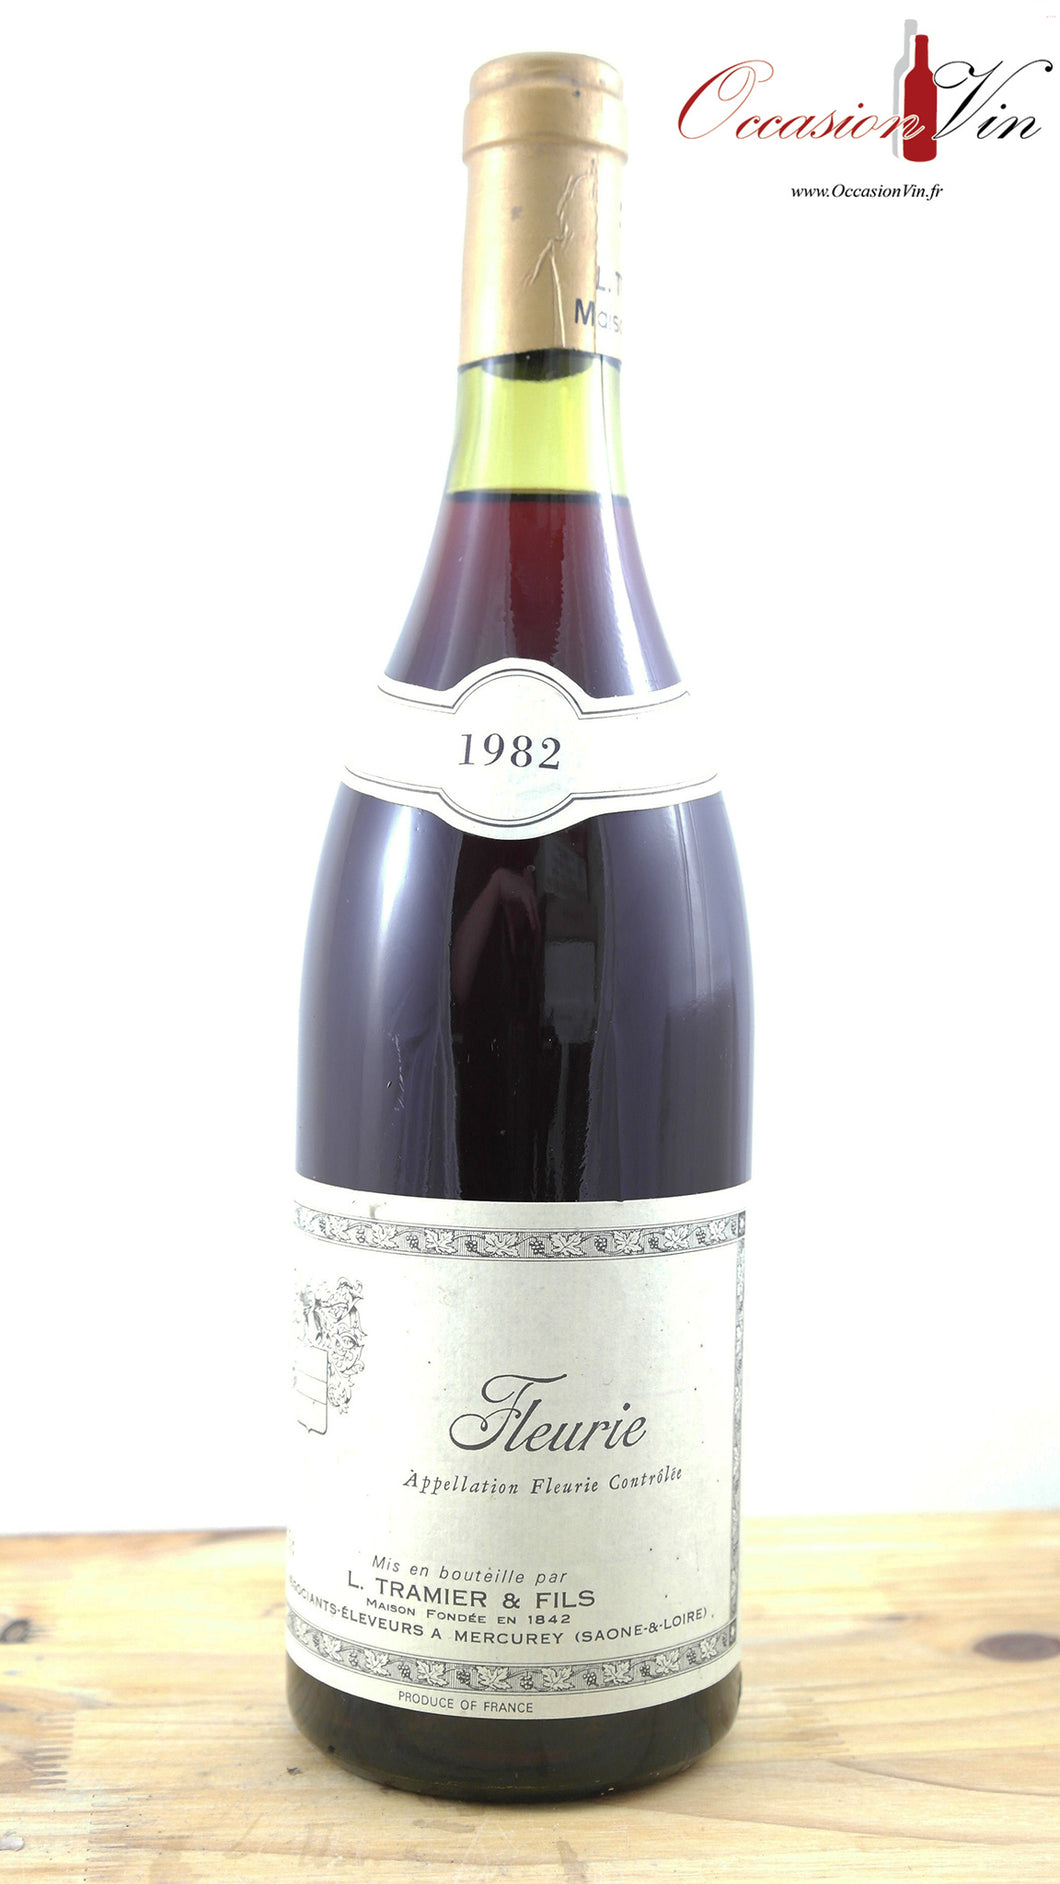 Fleurie L.Tramier et Fils Vin 1982